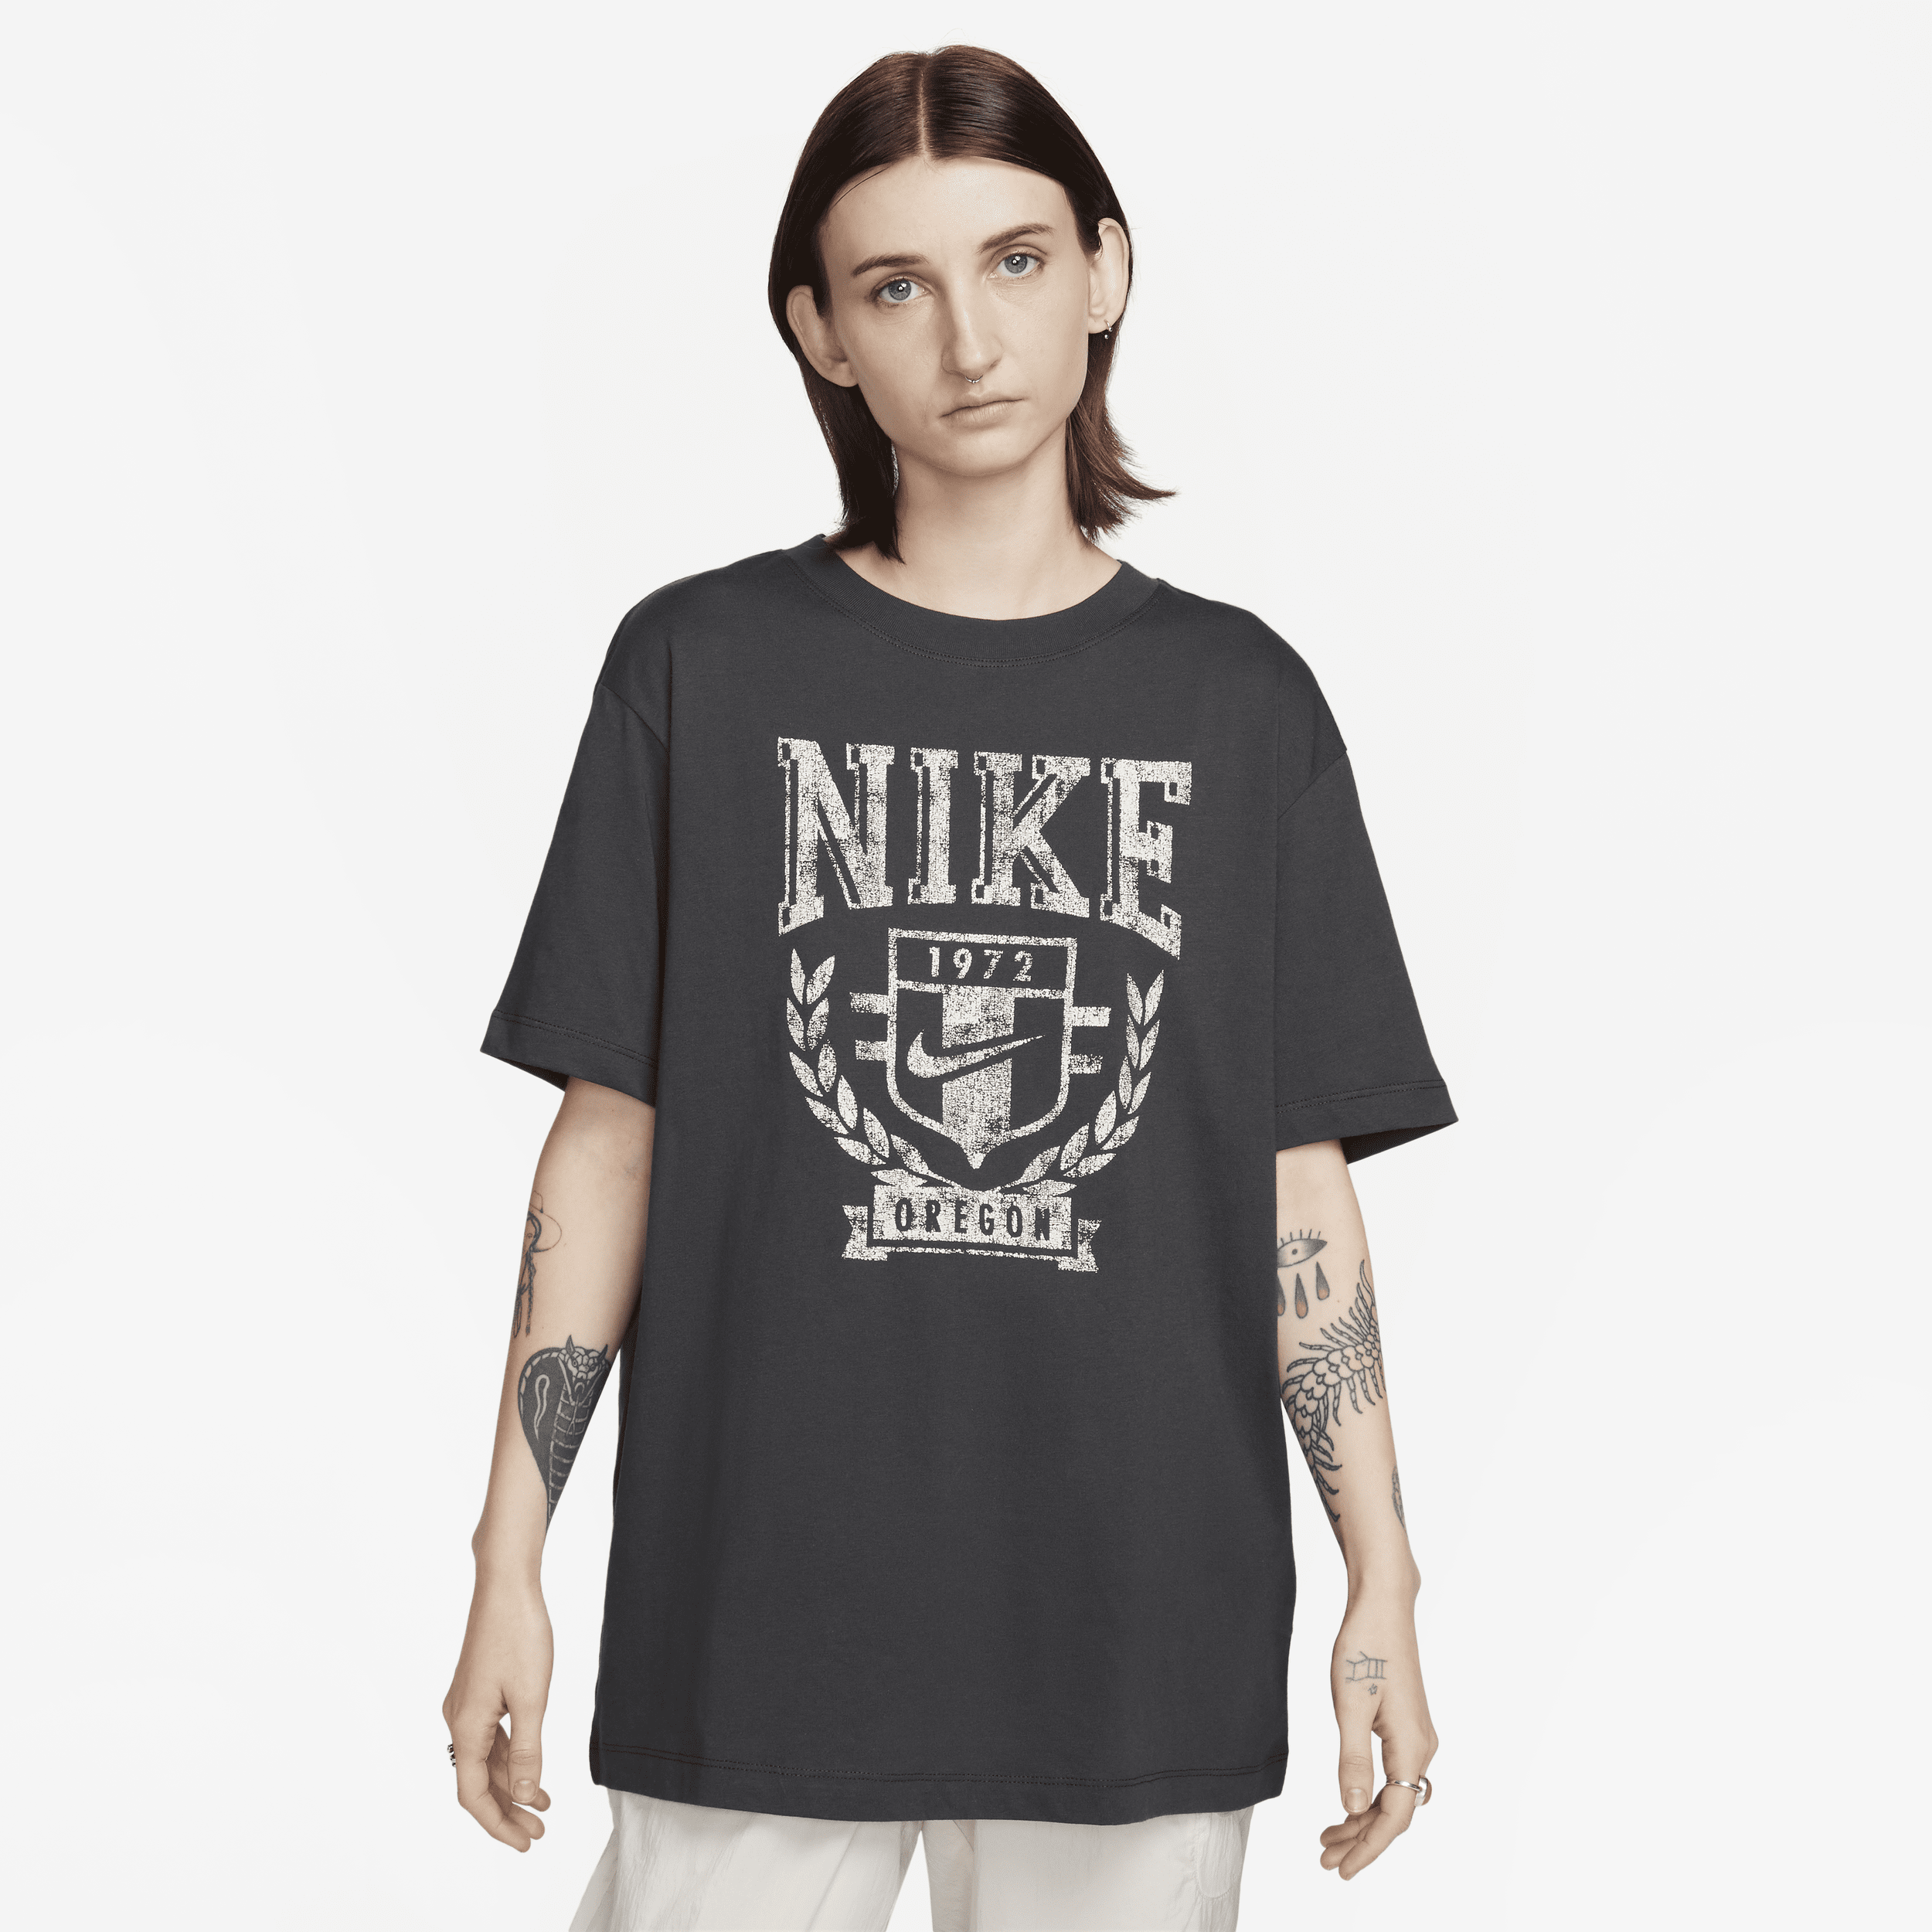 Nike Sportswear Camiseta - Mujer - Gris